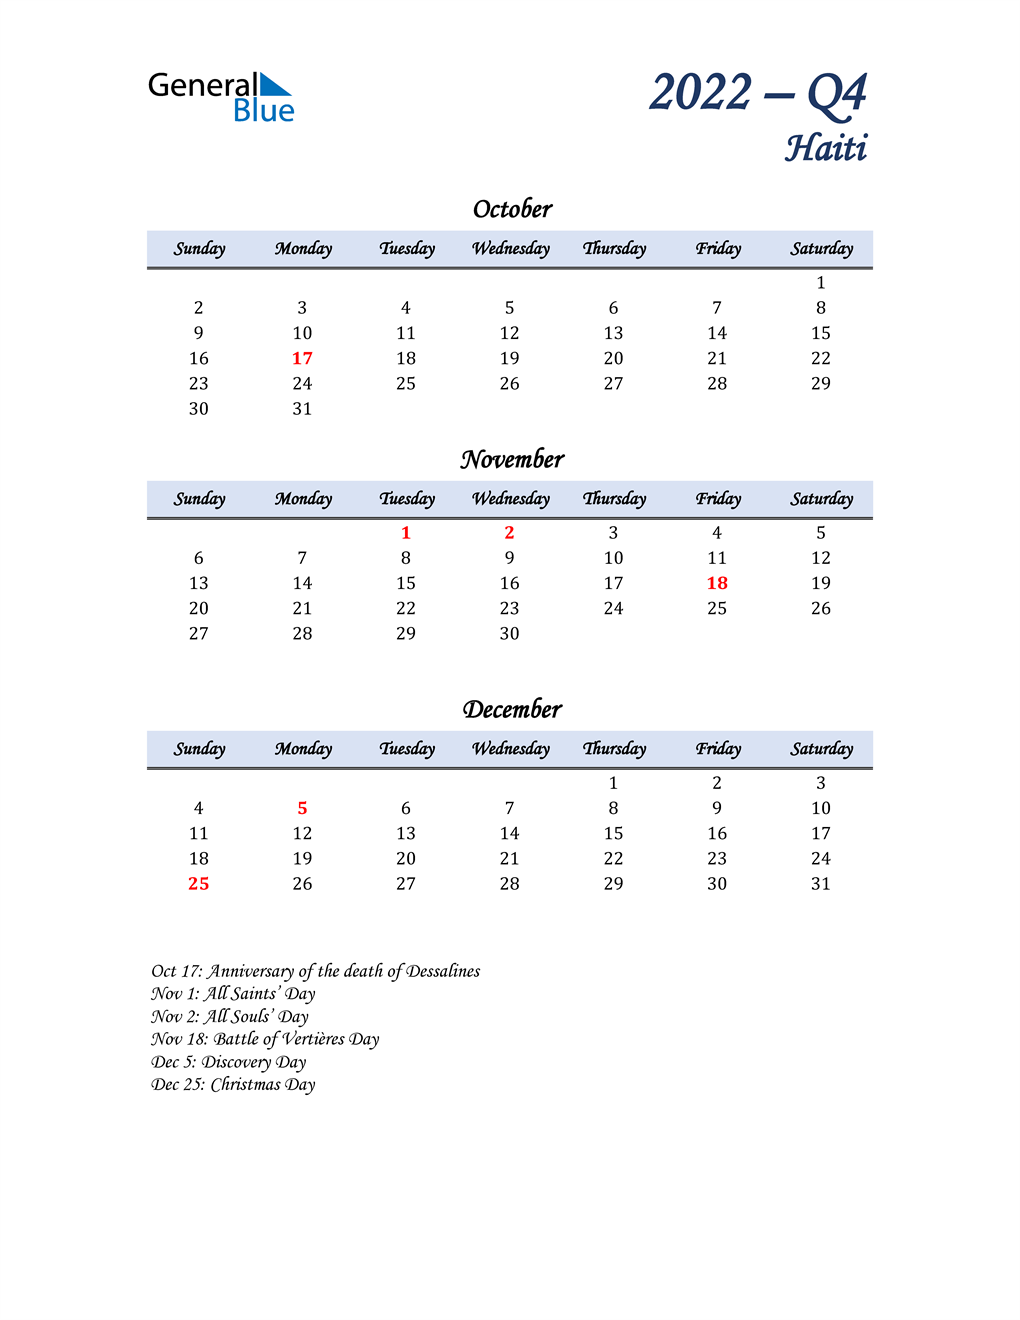  October, November, and December Calendar for Haiti